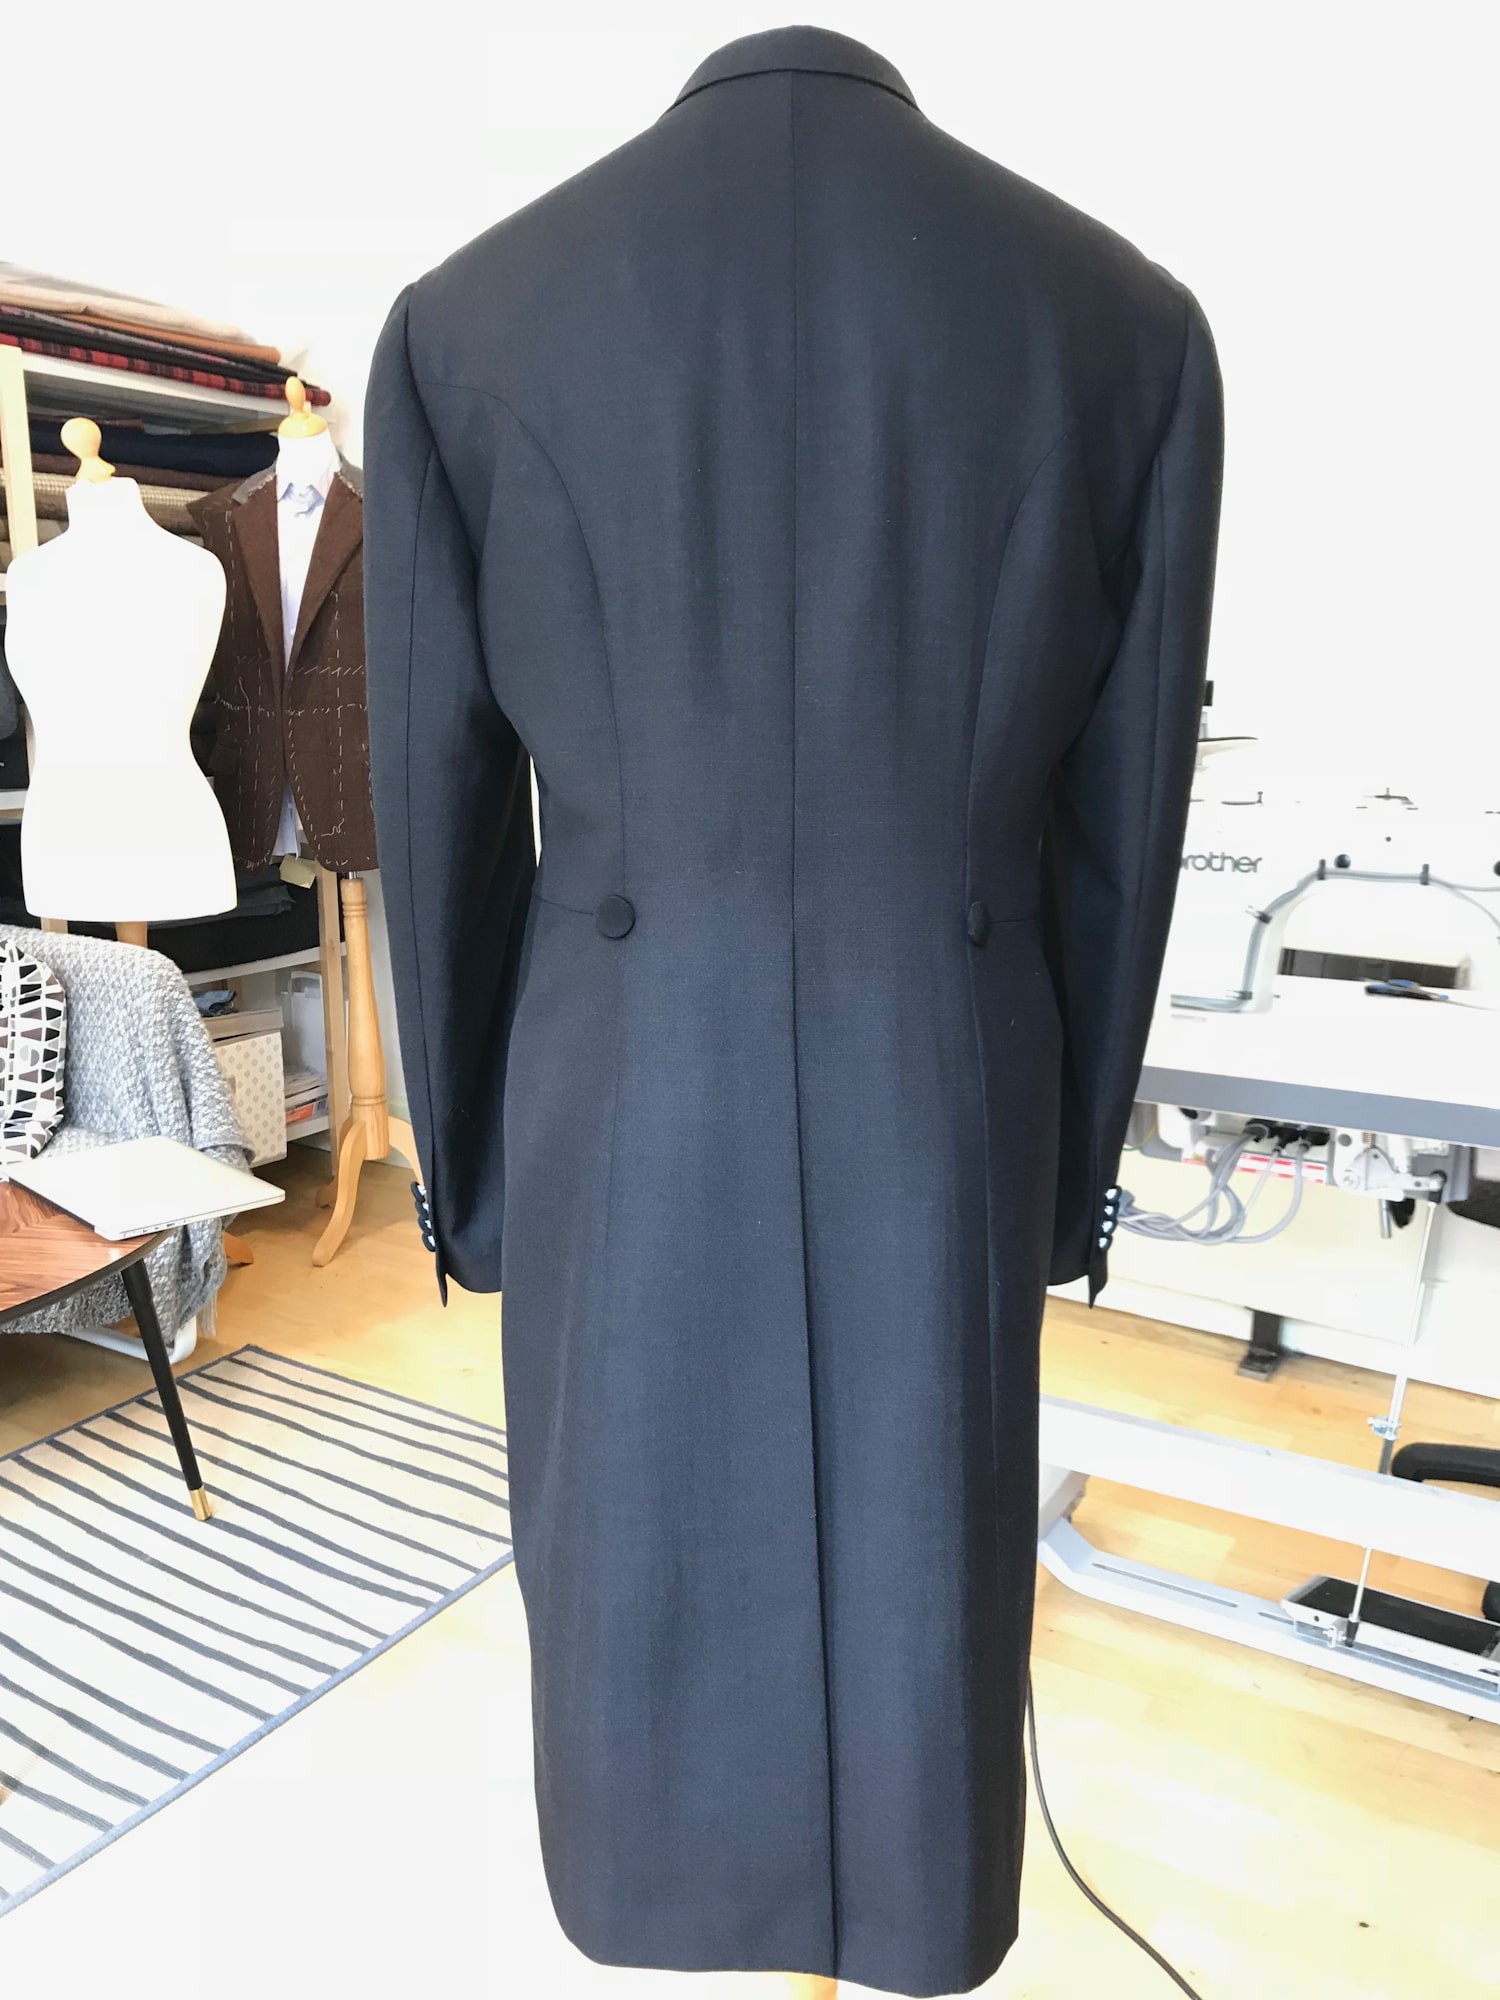 A black long suit on a mannequin